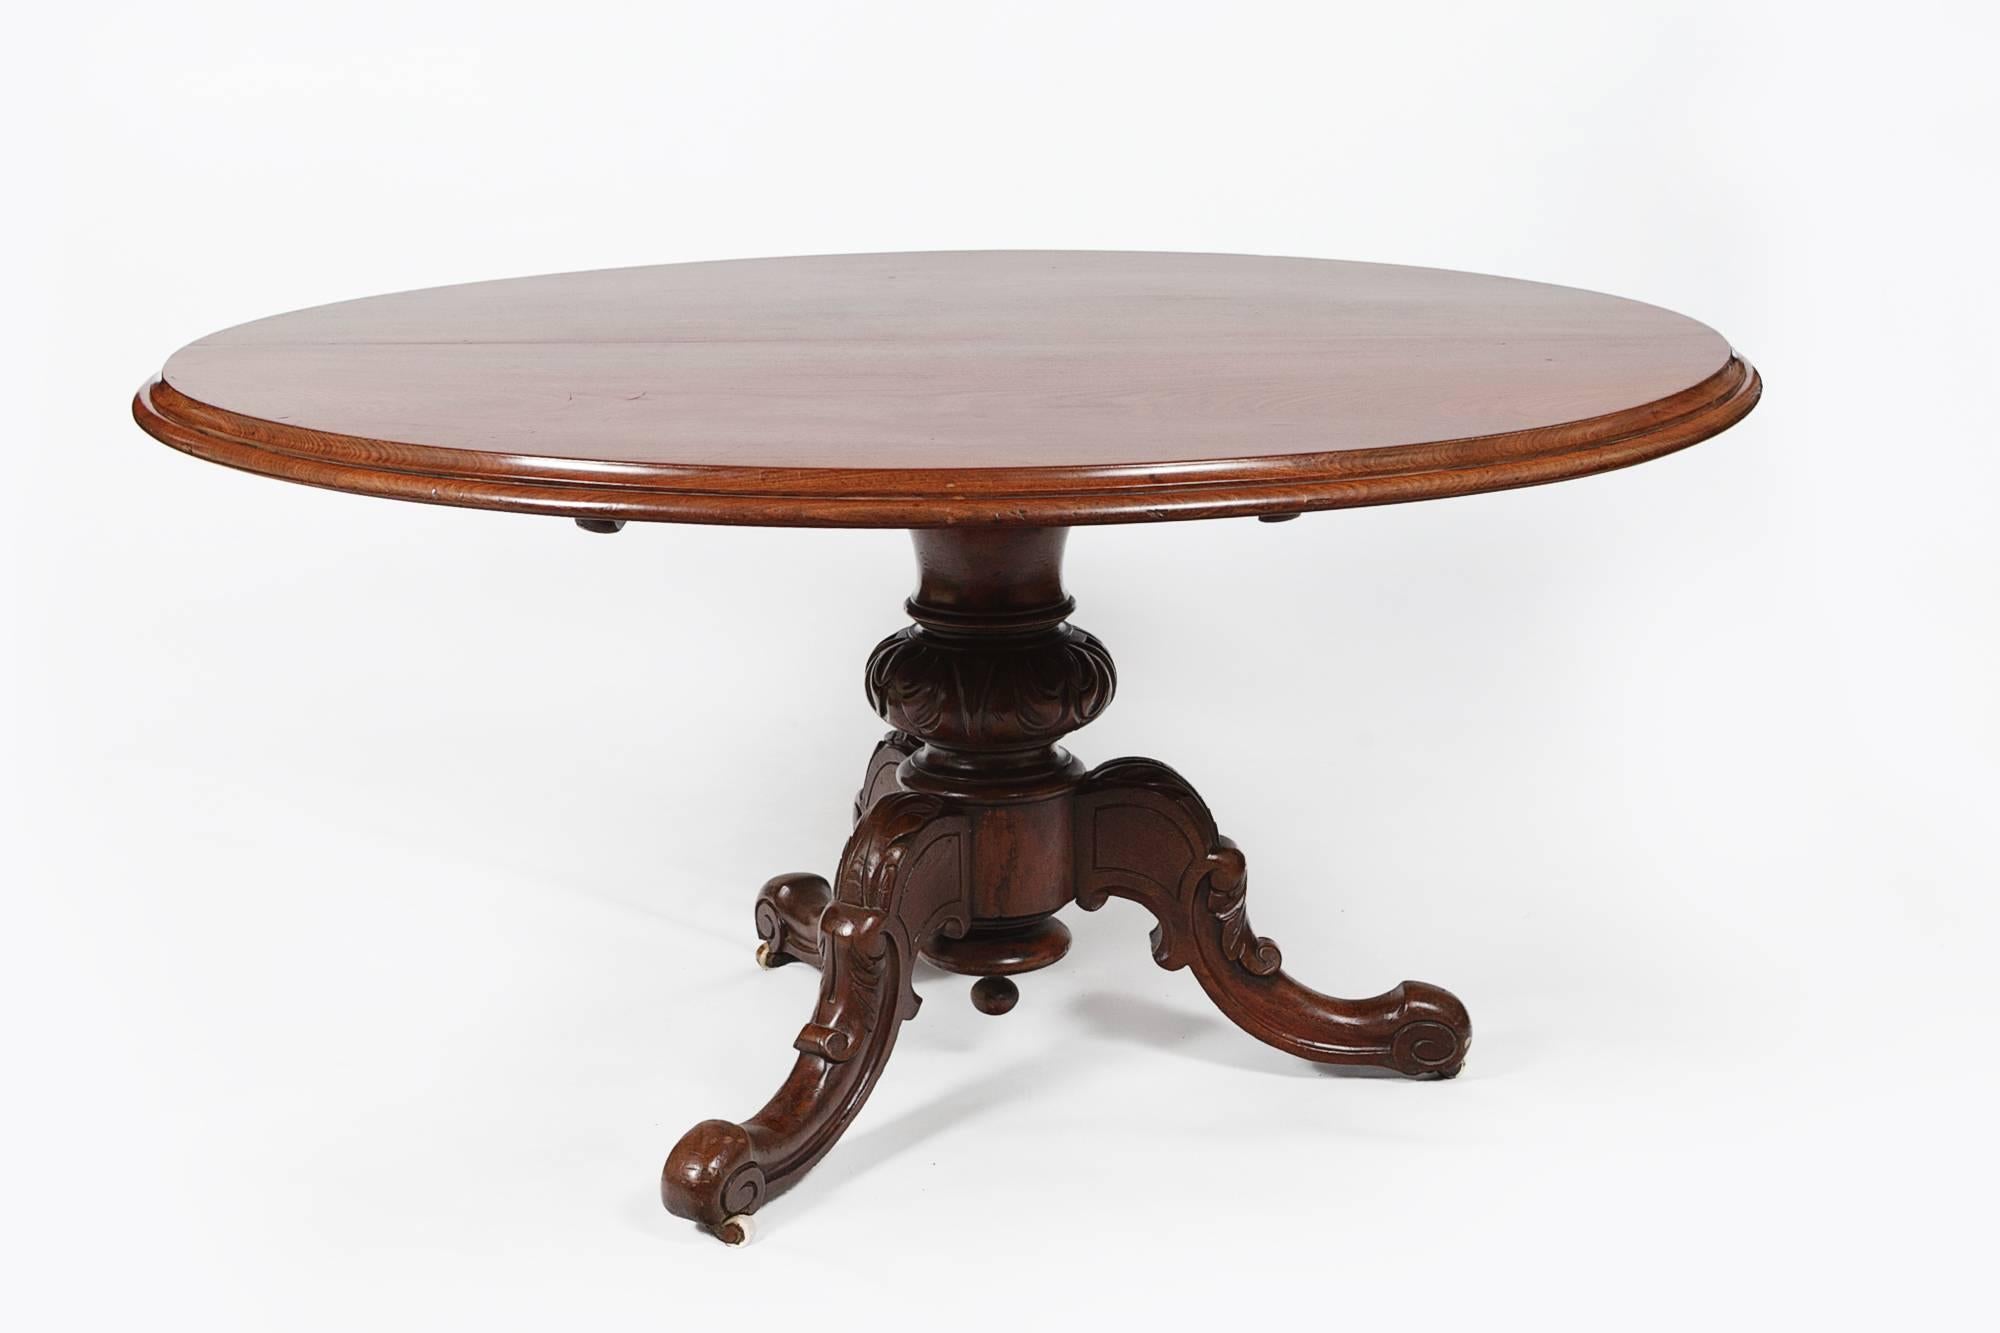 table à dîner ovale Regency du XIXe siècle, en acajou, à plateau basculant. Sur une seule cosse, avec trois pieds sculptés évasés sur des roulettes en laiton.